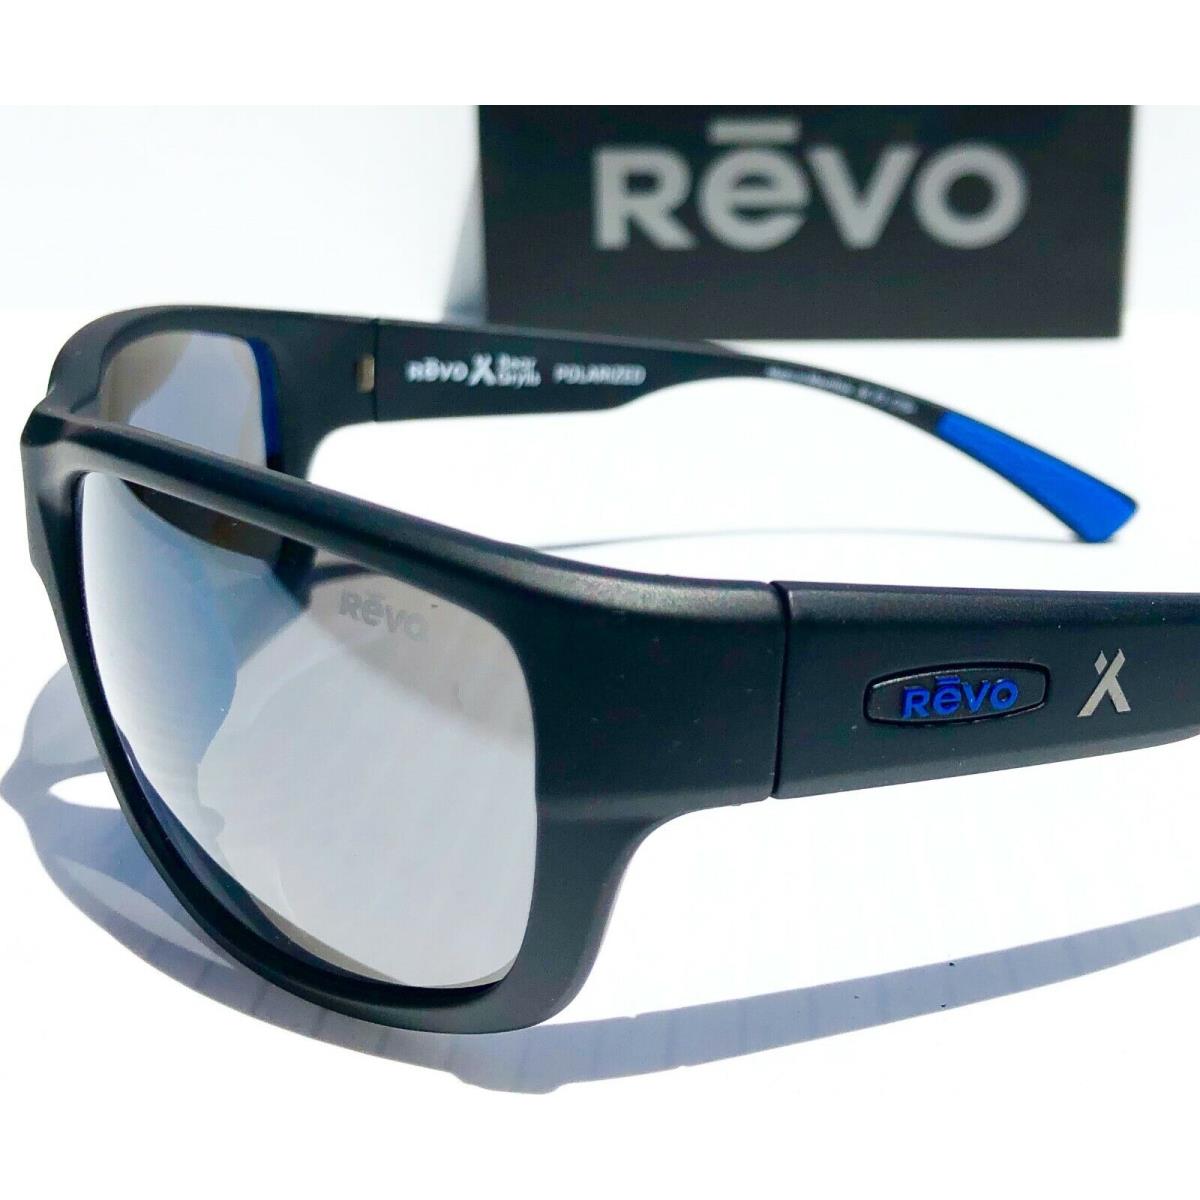 Revo sunglasses  - Black Frame, Graphite Grey view Lens